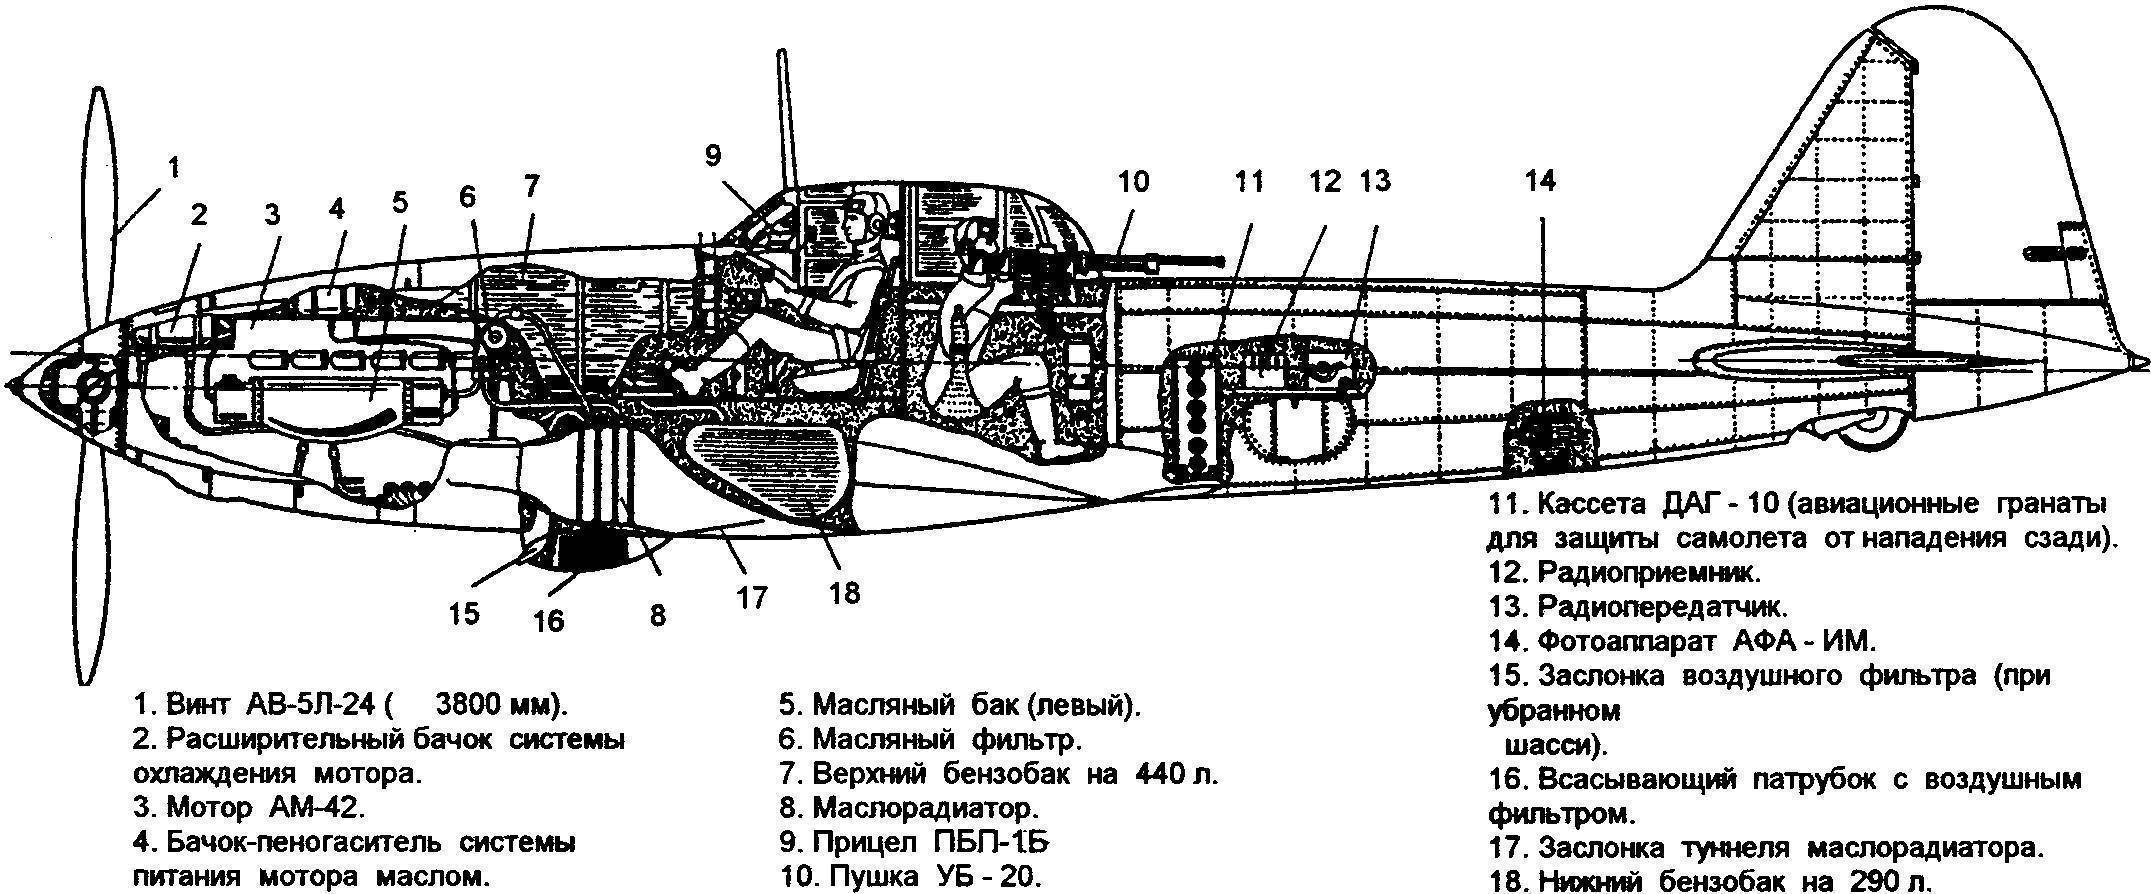 Обзор штурмовика ИЛ-16 — описание самолета и его технические характеристики